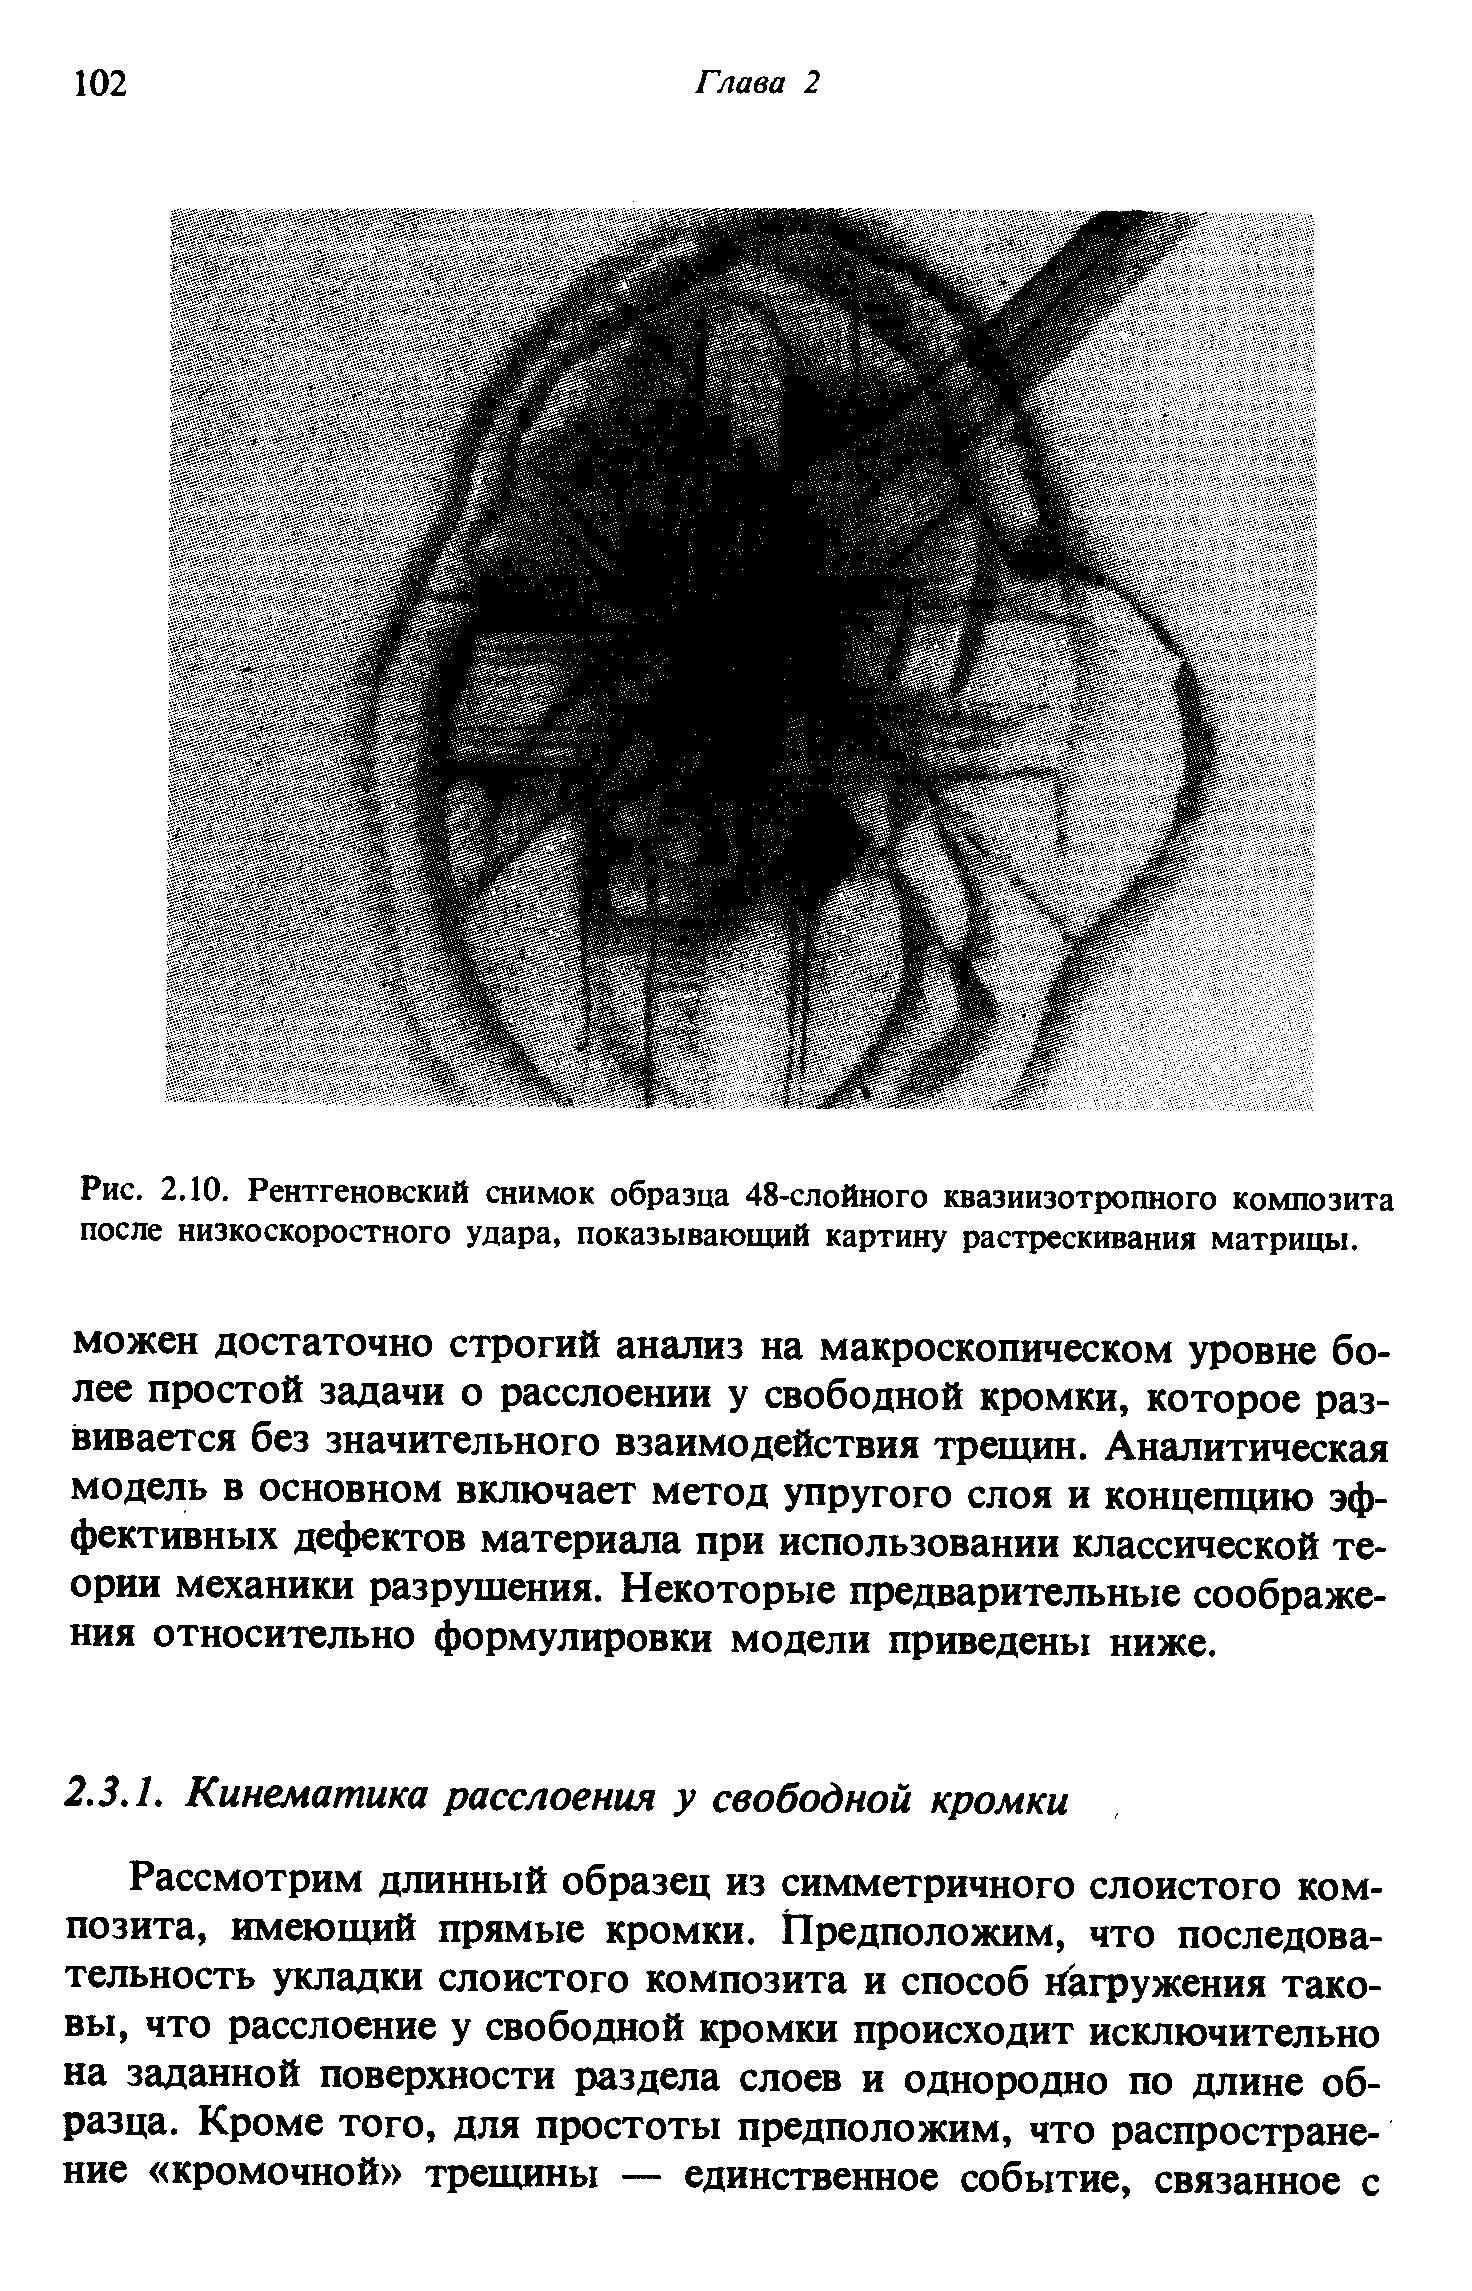 Рис. 2.10. Рентгеновский снимок образца 48-слойного квазиизотропного композита после низкоскоростного удара, показывающий картину растрескивания матрицы.
